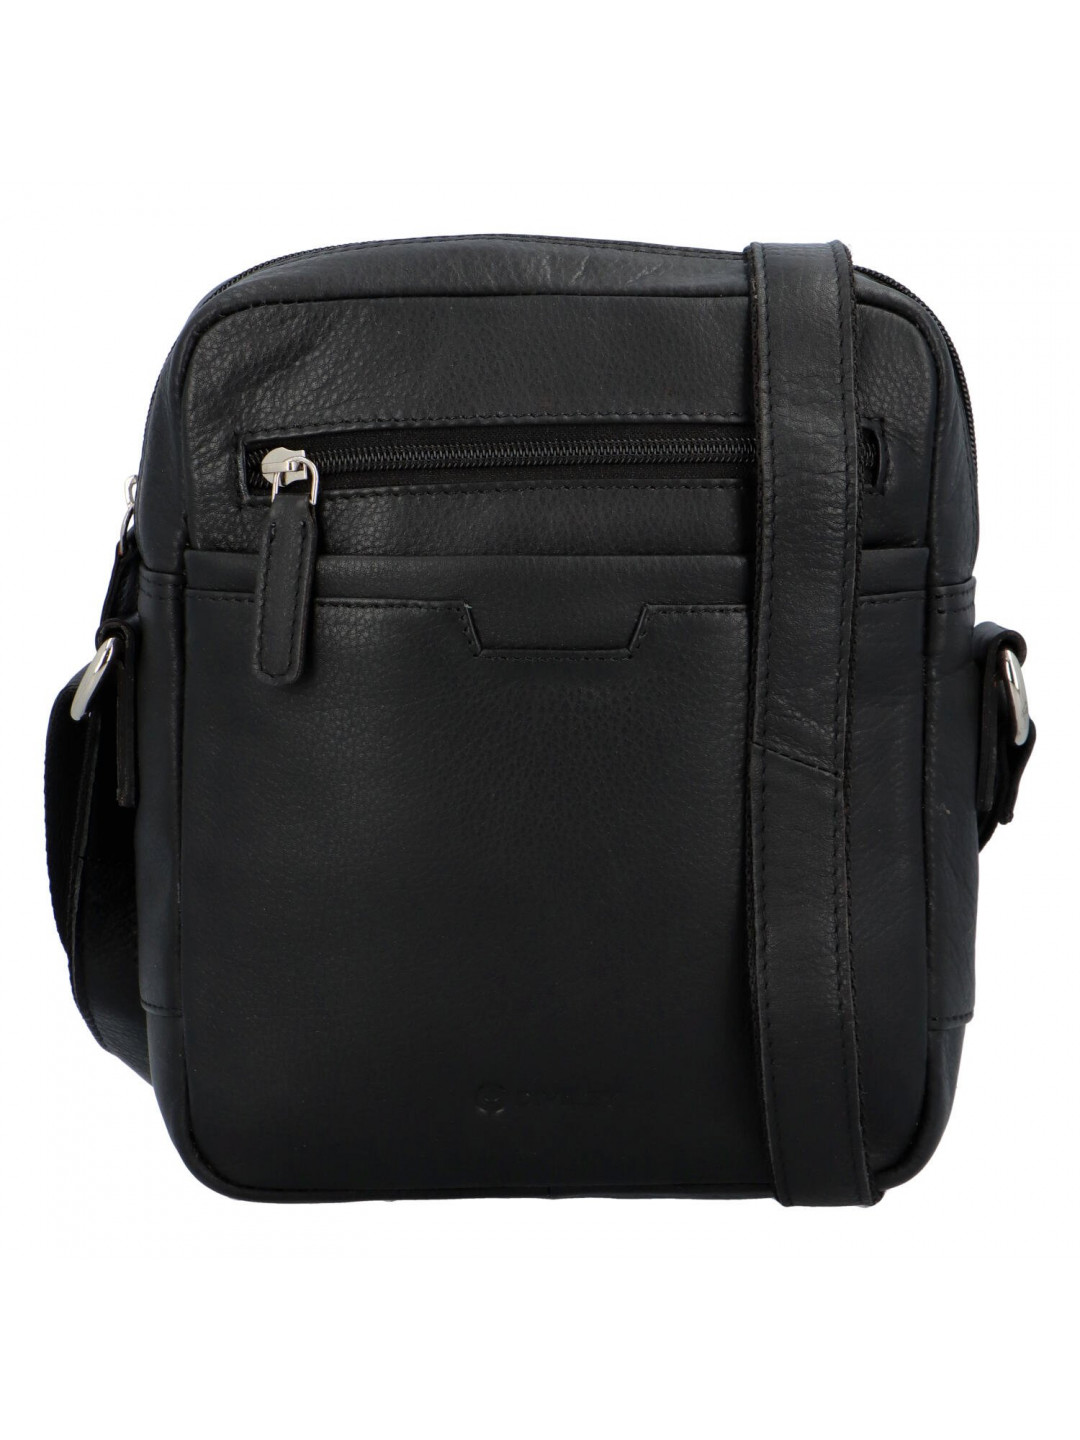 Pánská kožená taška černá – Diviley Qeens New22